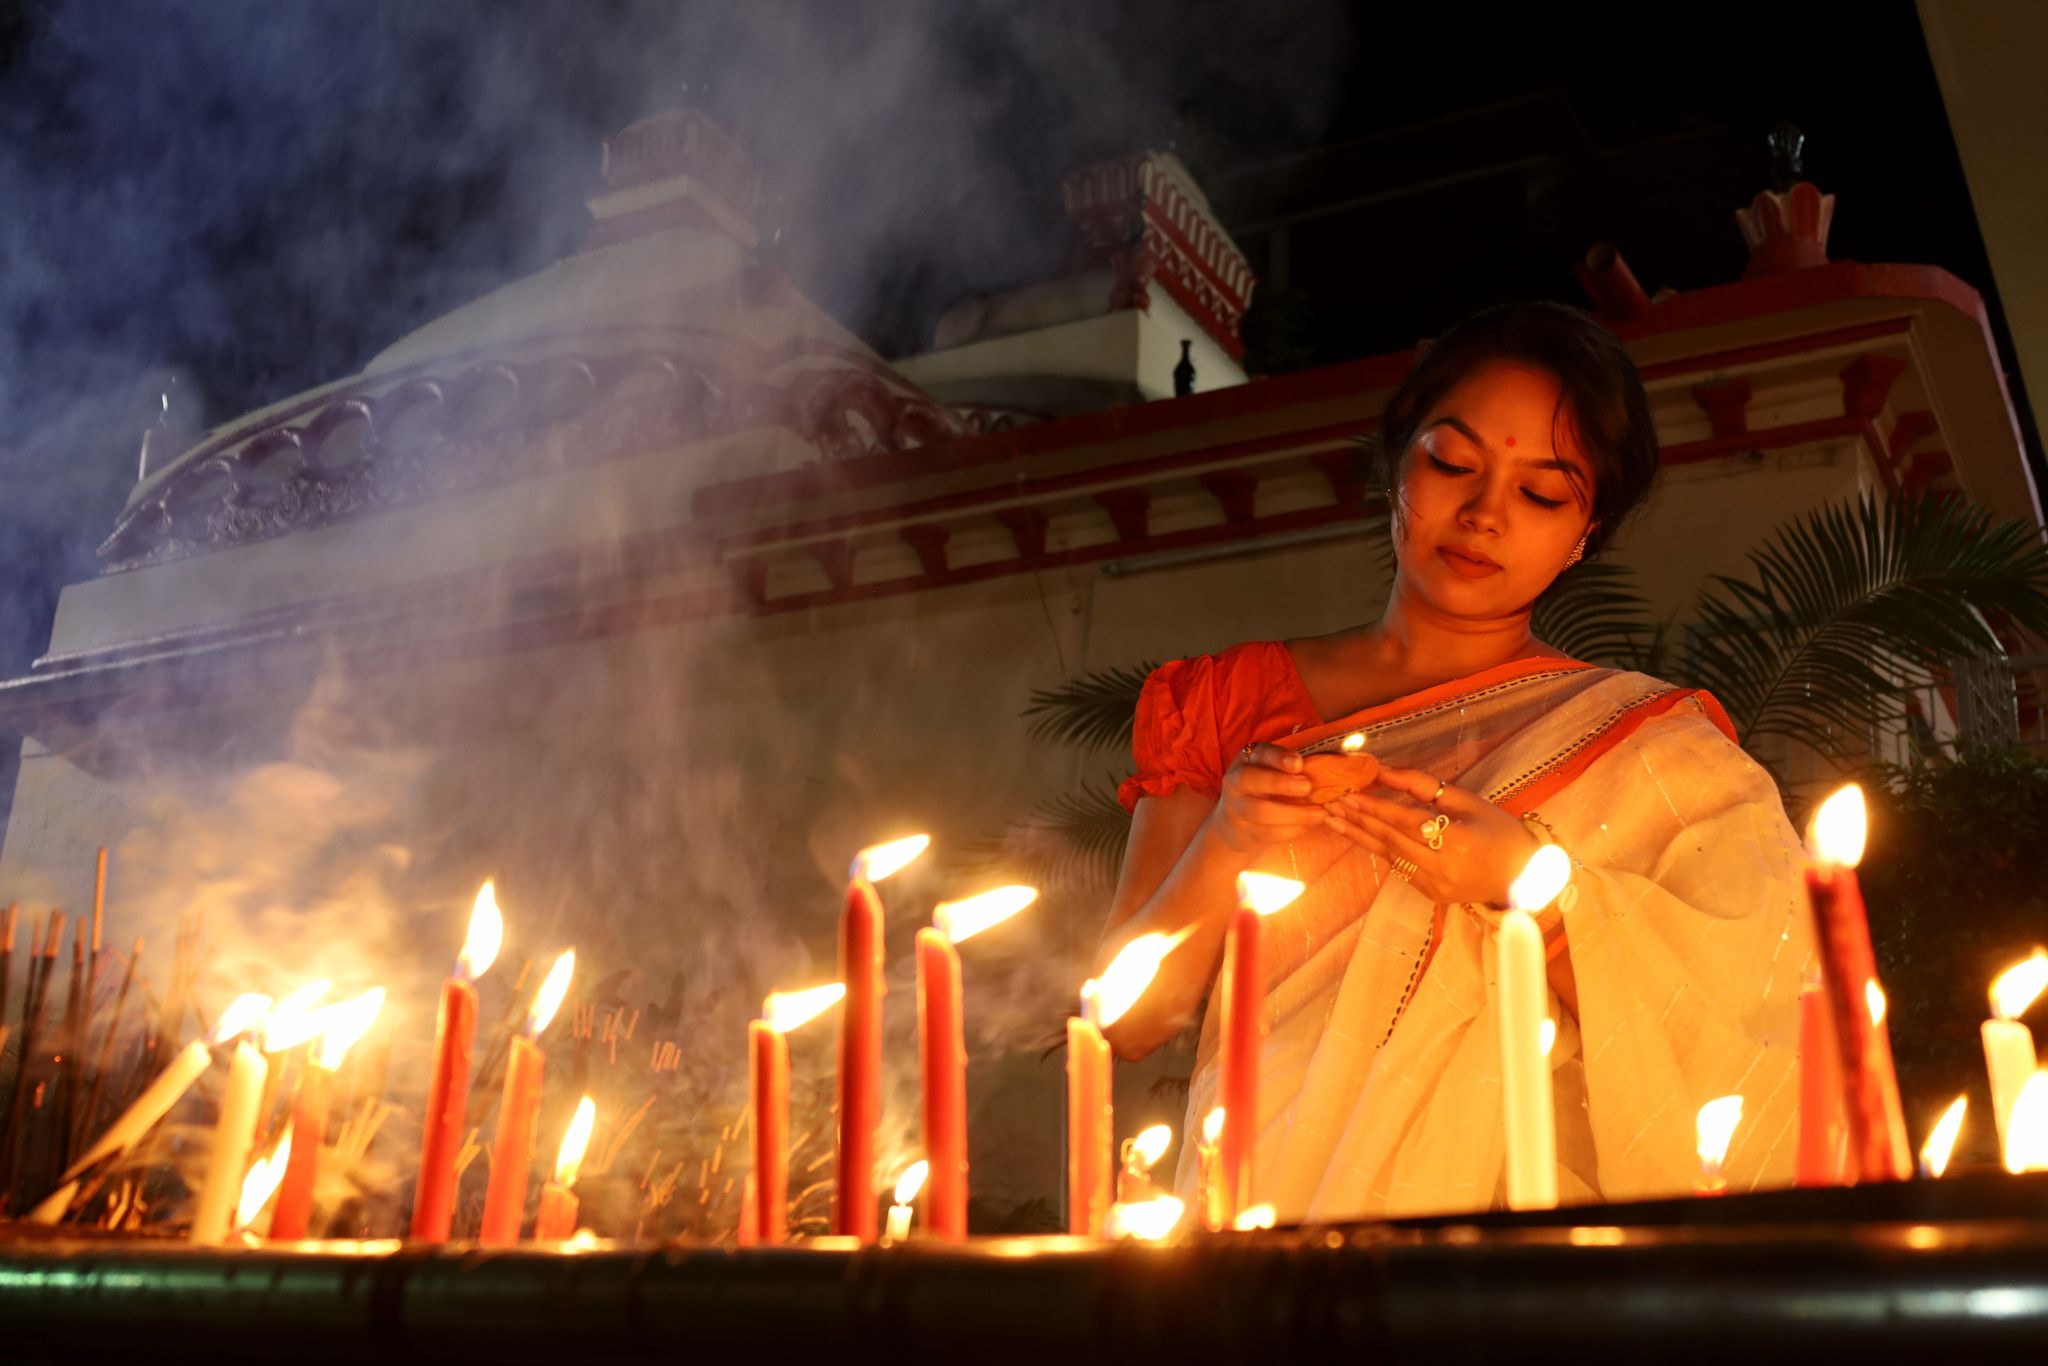 Das Lichterfest Diwali ist eines der wichtigsten Feste im Hinduismus. Eine Gläubige zündet im Dhakeschwari-Tempel in Bangladesch mehrere Kerzen an. Traditionell wird auch mit Weihrauch und Blumen gefeiert.